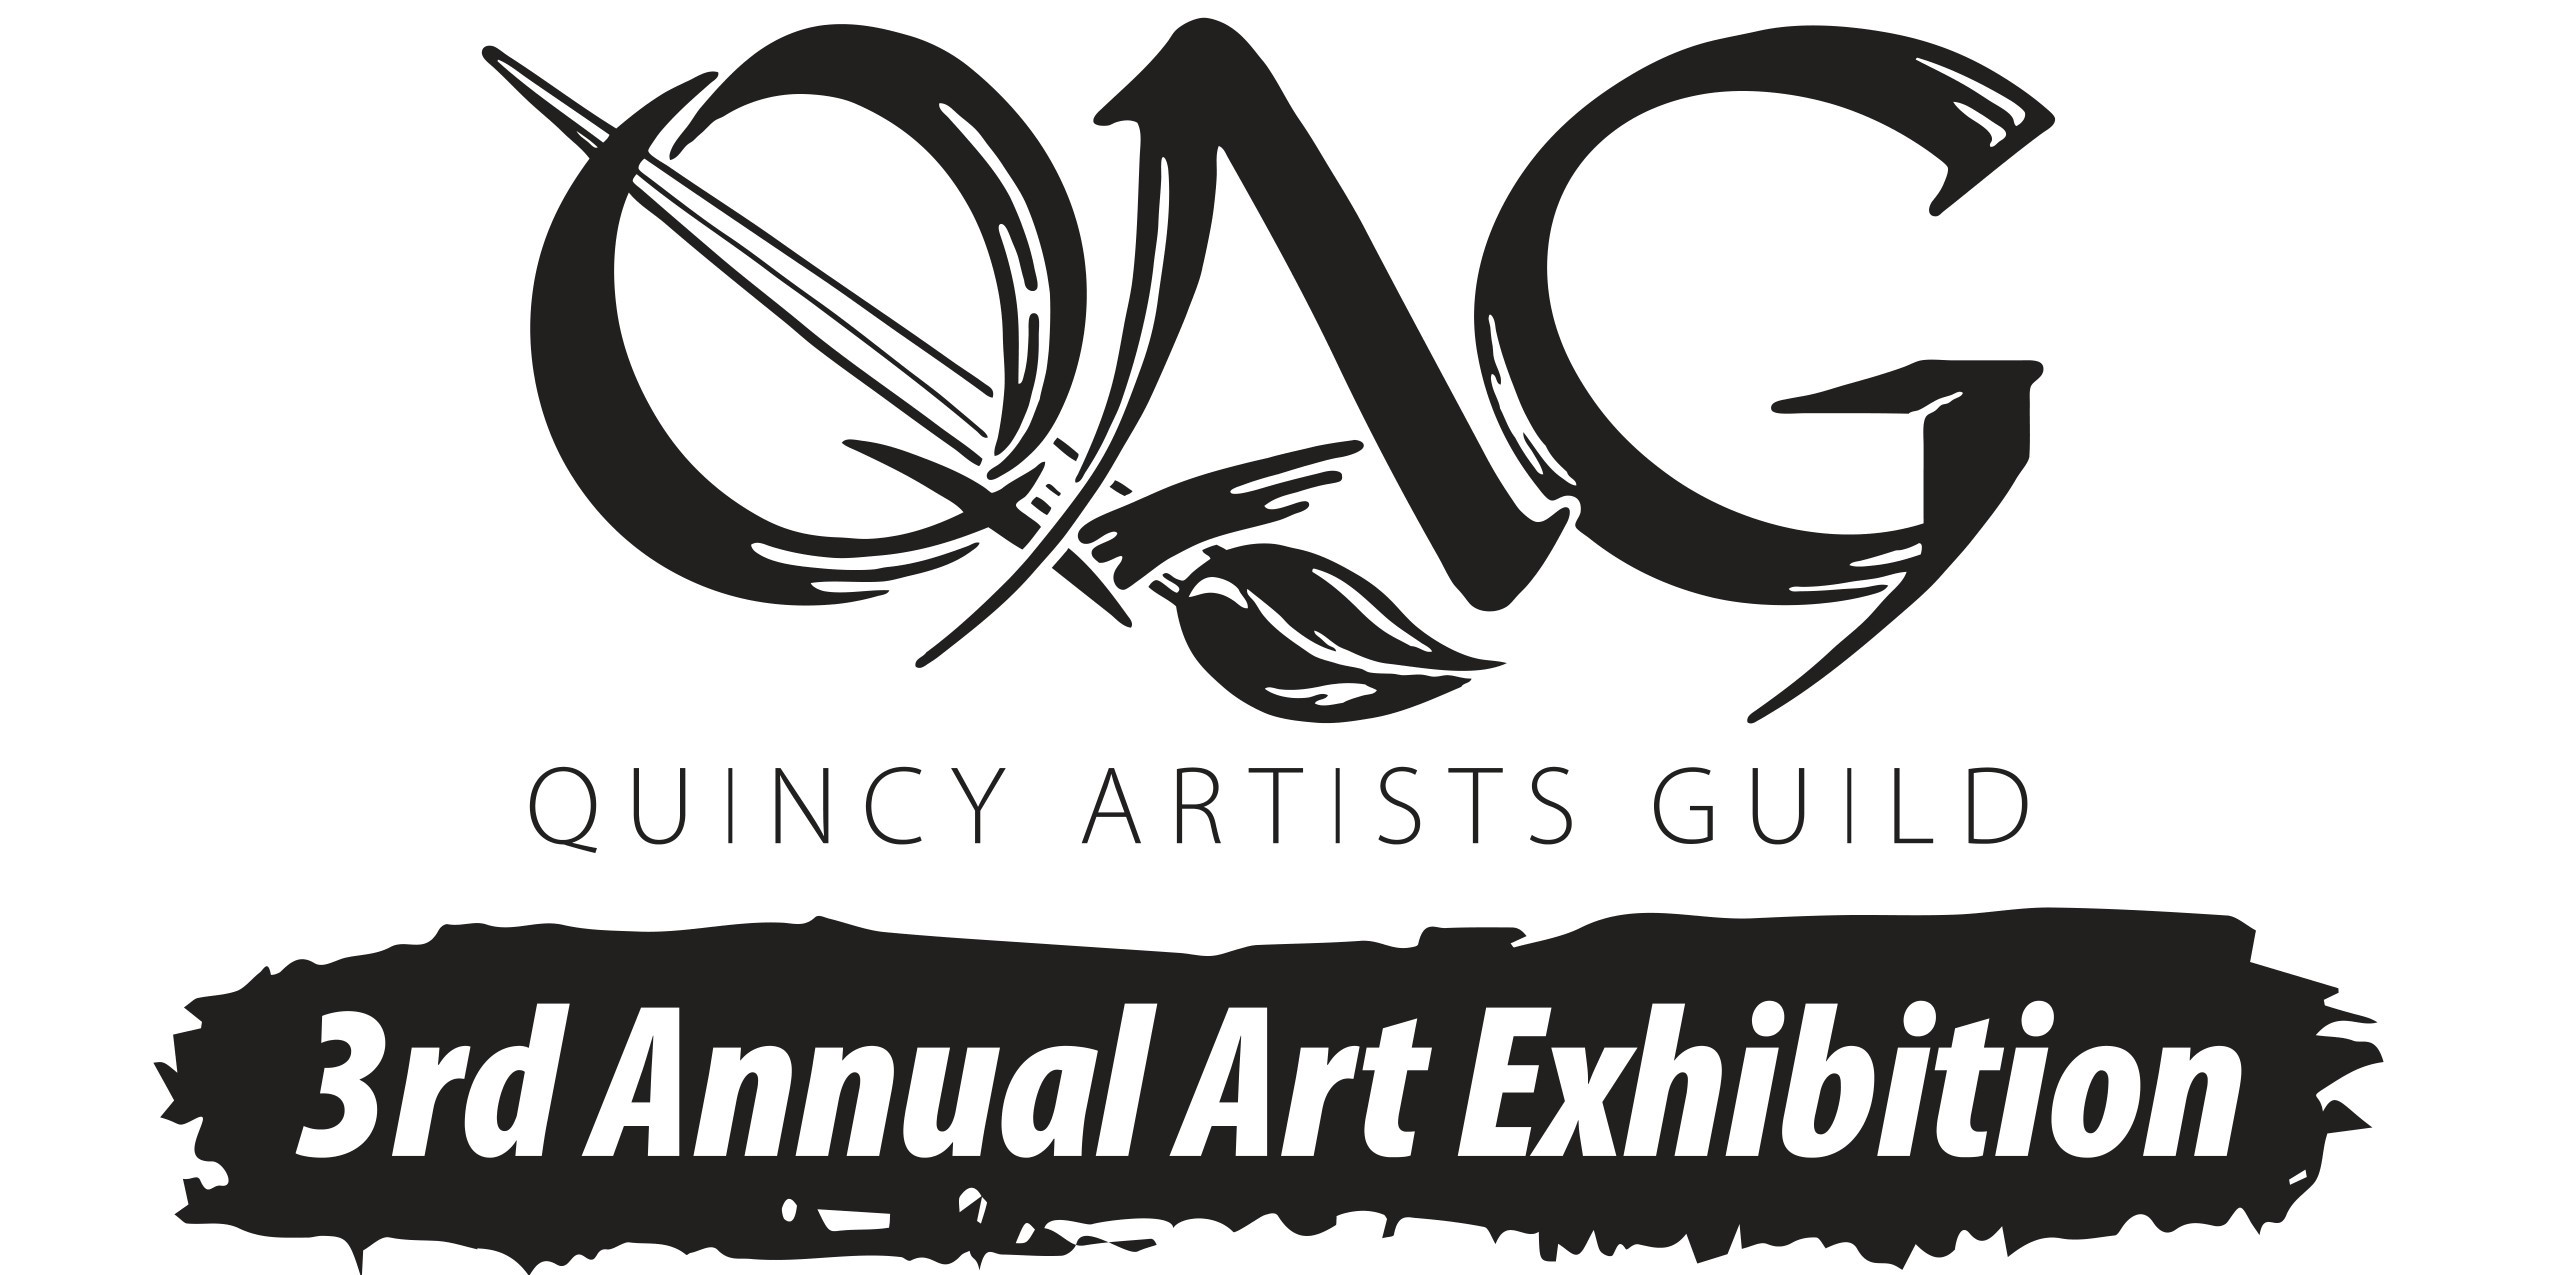 Quincy Artists Guild